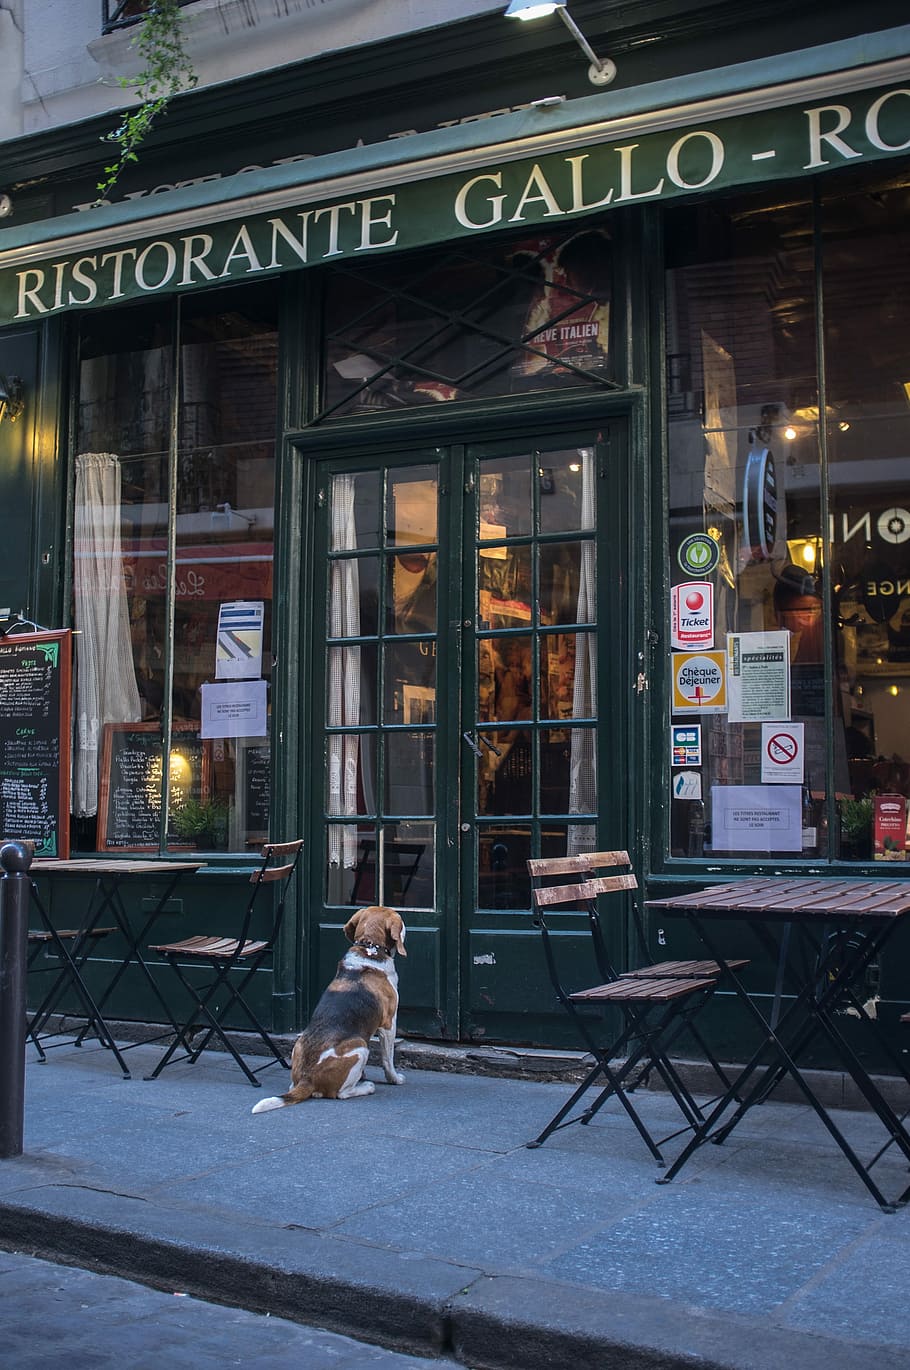 estabelecimento ristorante gallo, restaurante francês, cervejaria, paris, espera, cão, paciência, frança, cidade, um animal